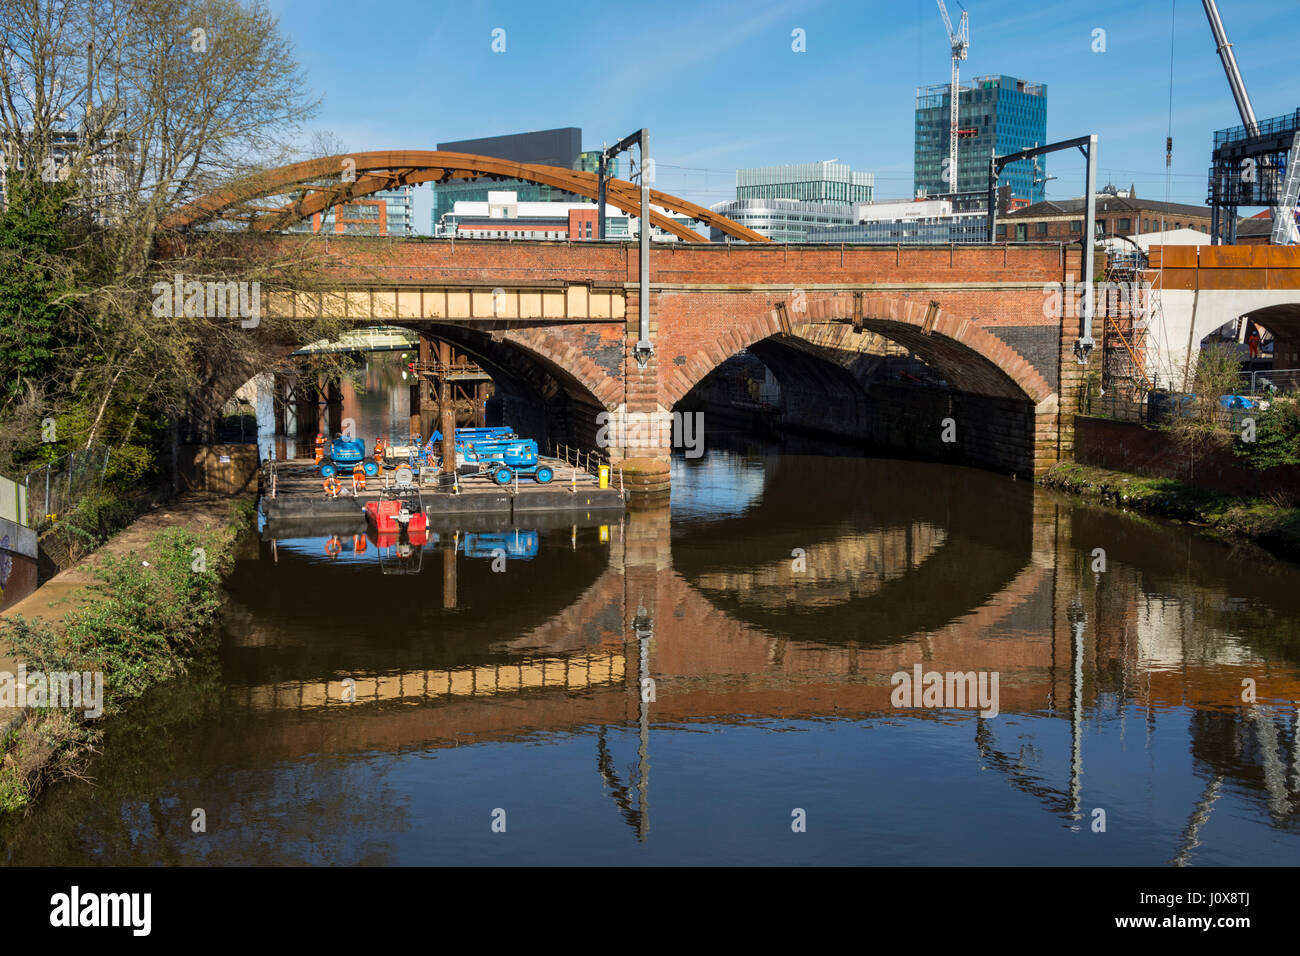 L'arco per il fiume Irwell, ponte per la nuova corda Ordsall rail link, dietro un vittoriano viadotto ferroviario, Salford, Manchester, Inghilterra, Regno Unito Foto Stock